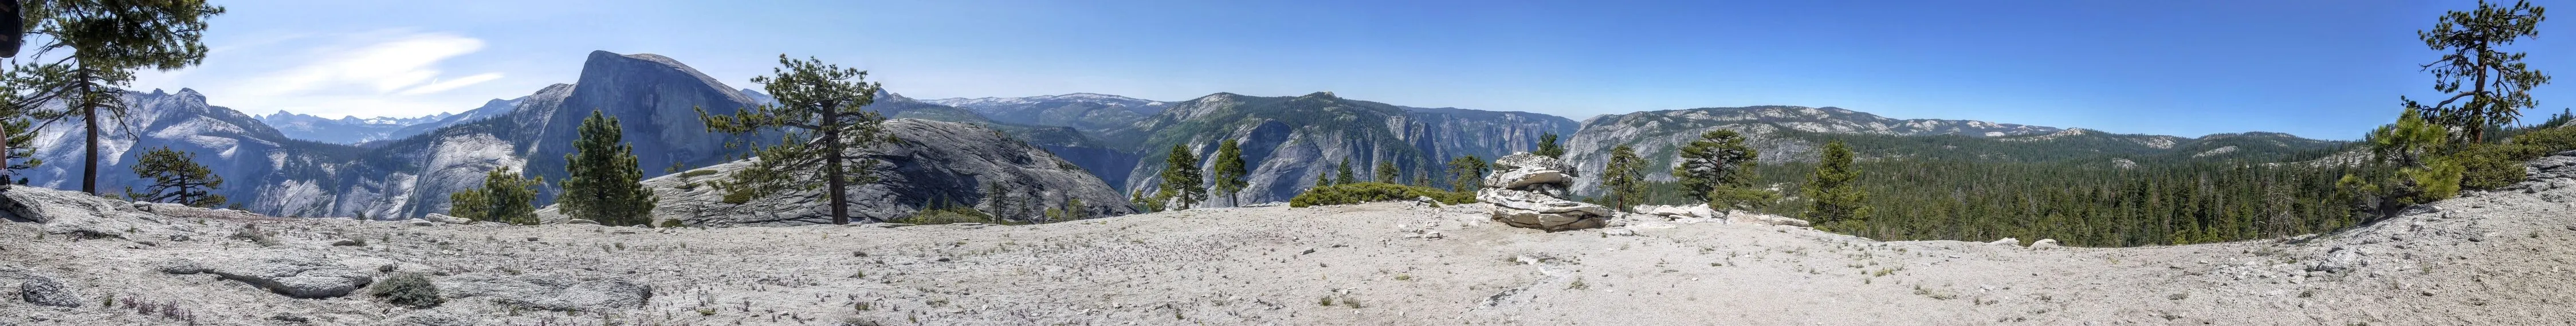 Panorama of Yosemite valley